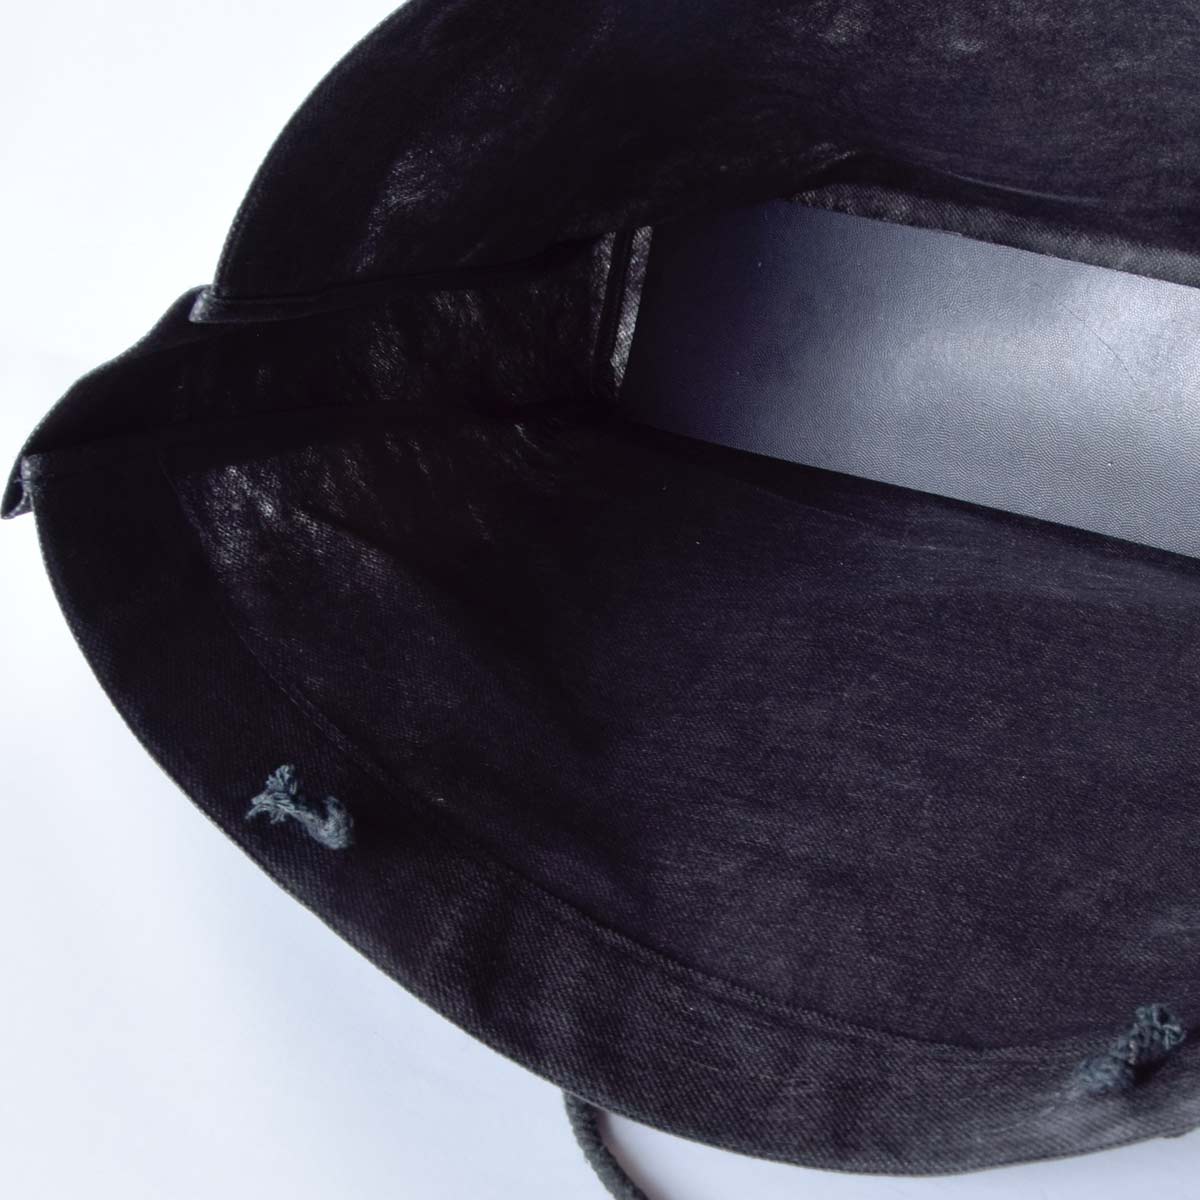 Drawstring bag, shopping tote for retail sales – 2185 (41 x 36,5 x 9 cm, black)